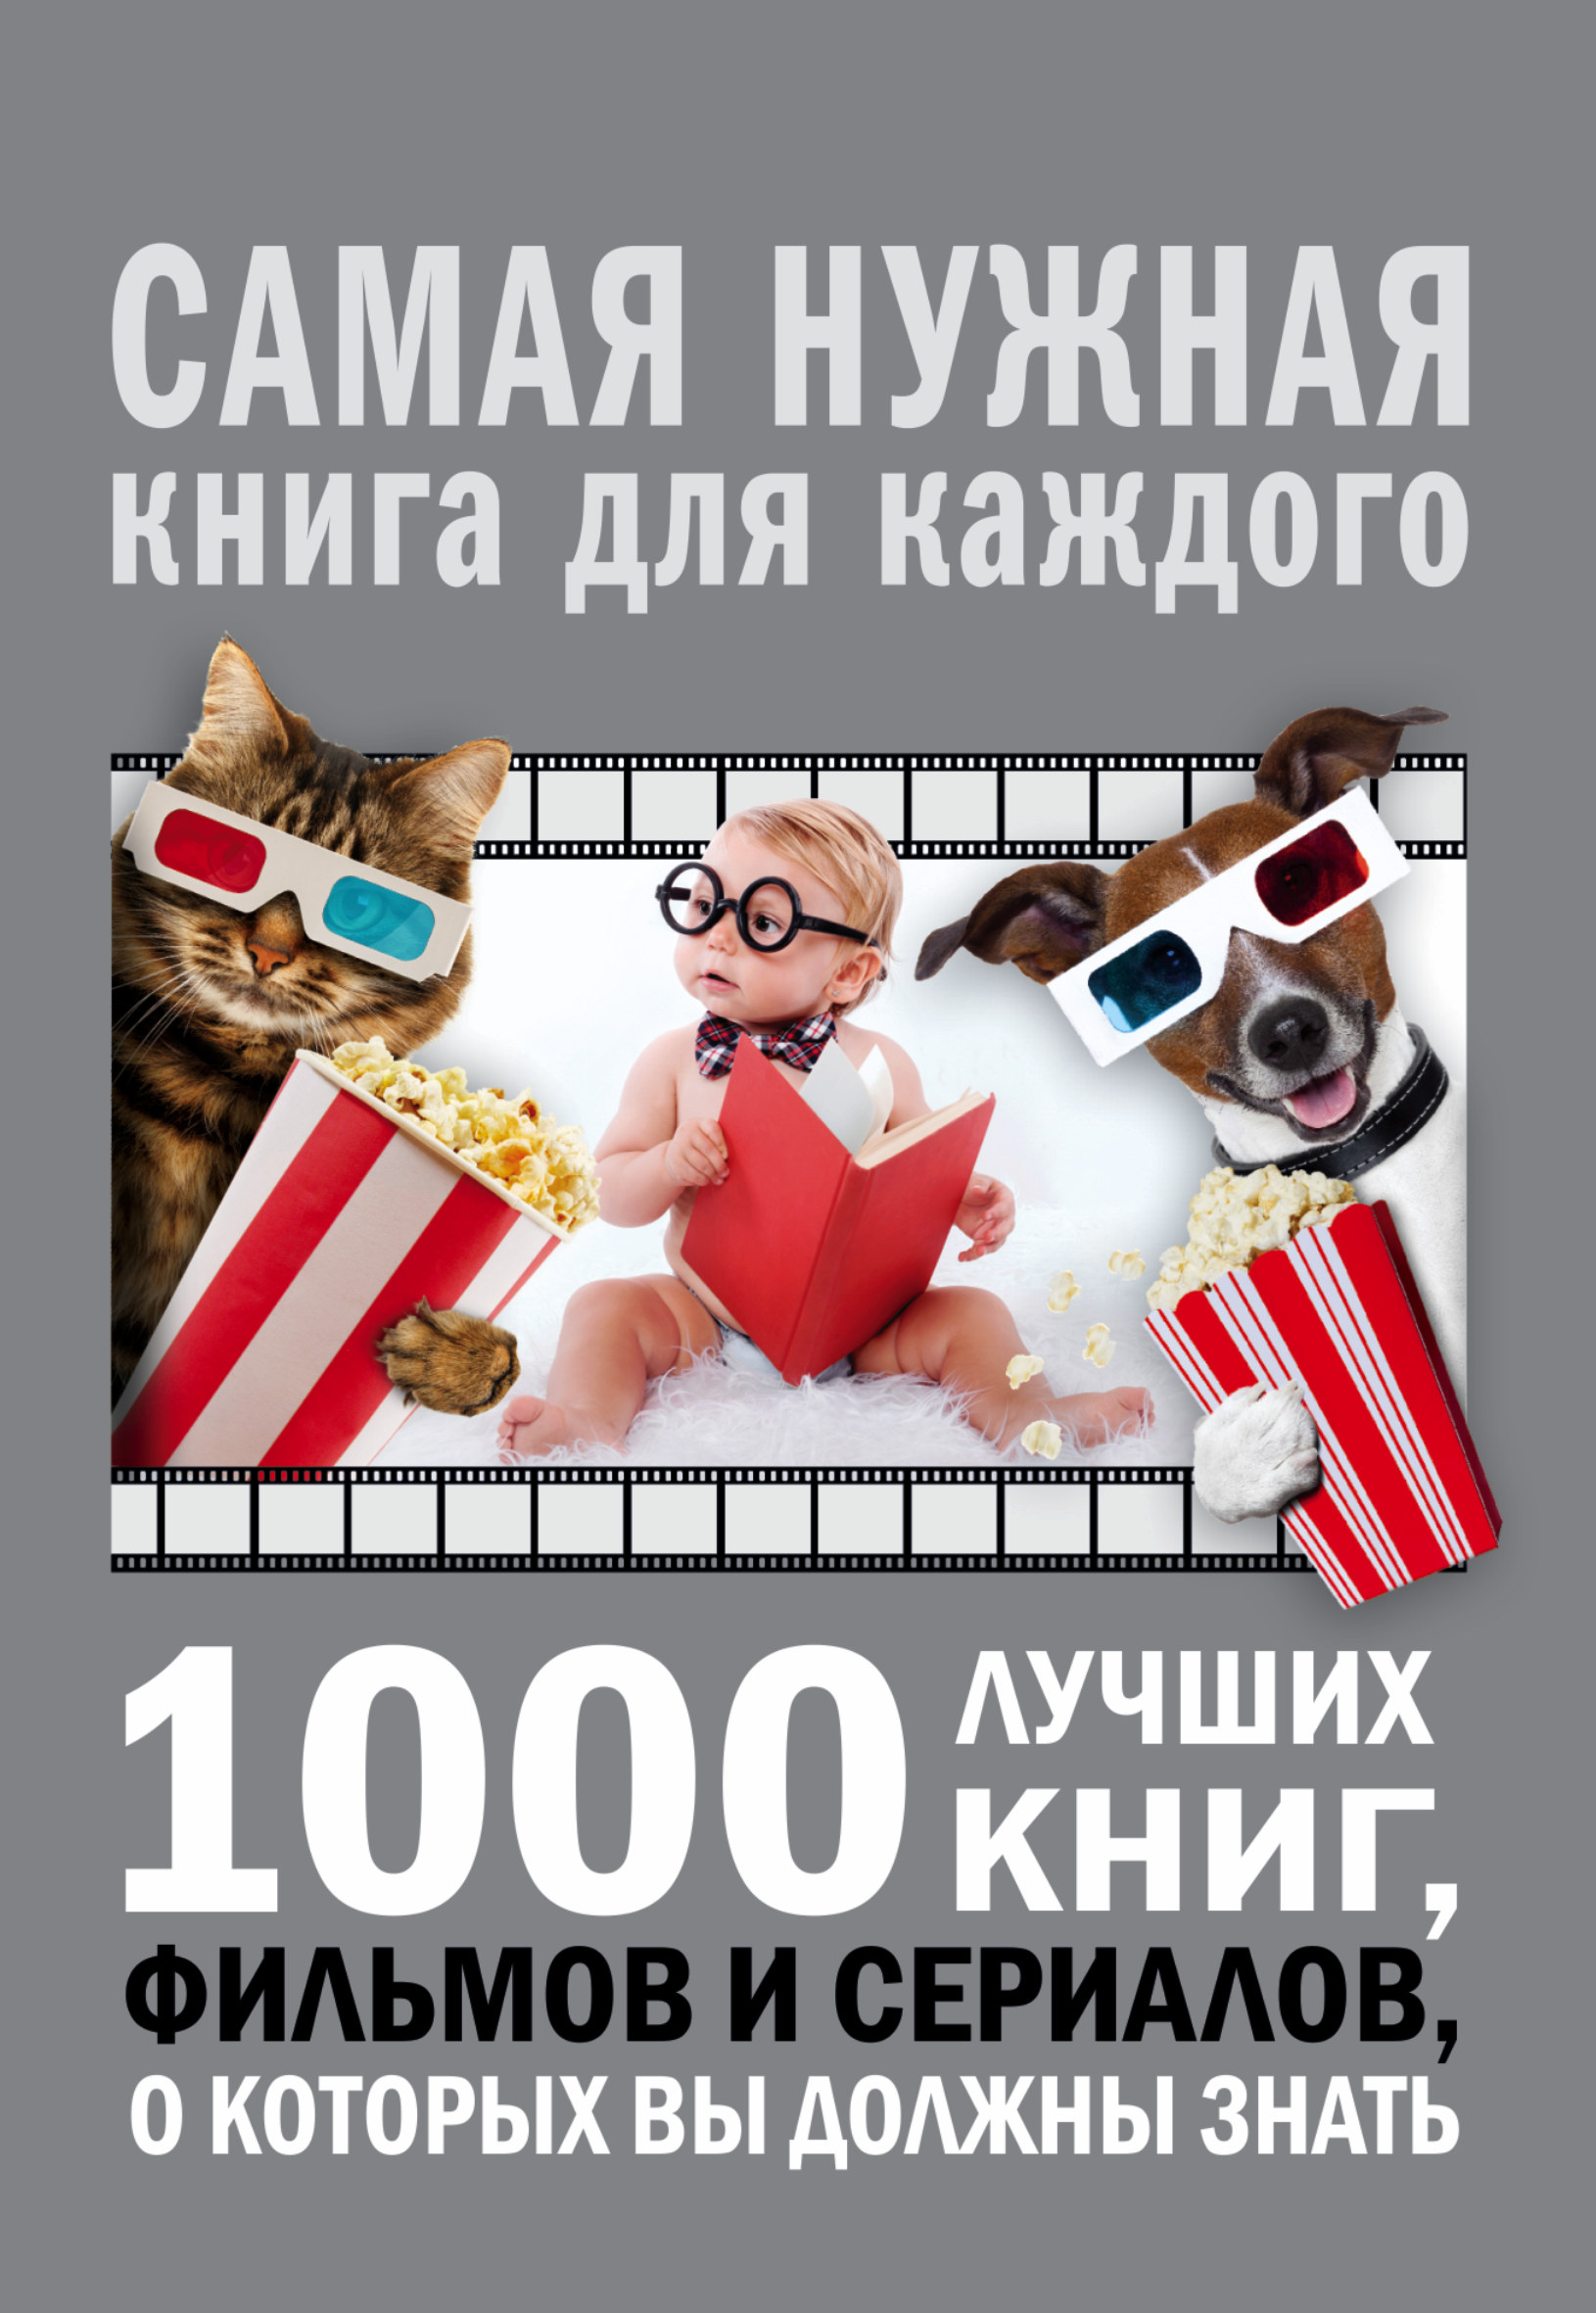 Мерников Андрей Геннадьевич 1000 лучших книг, фильмов и сериалов, о которых вы должны знать - страница 0